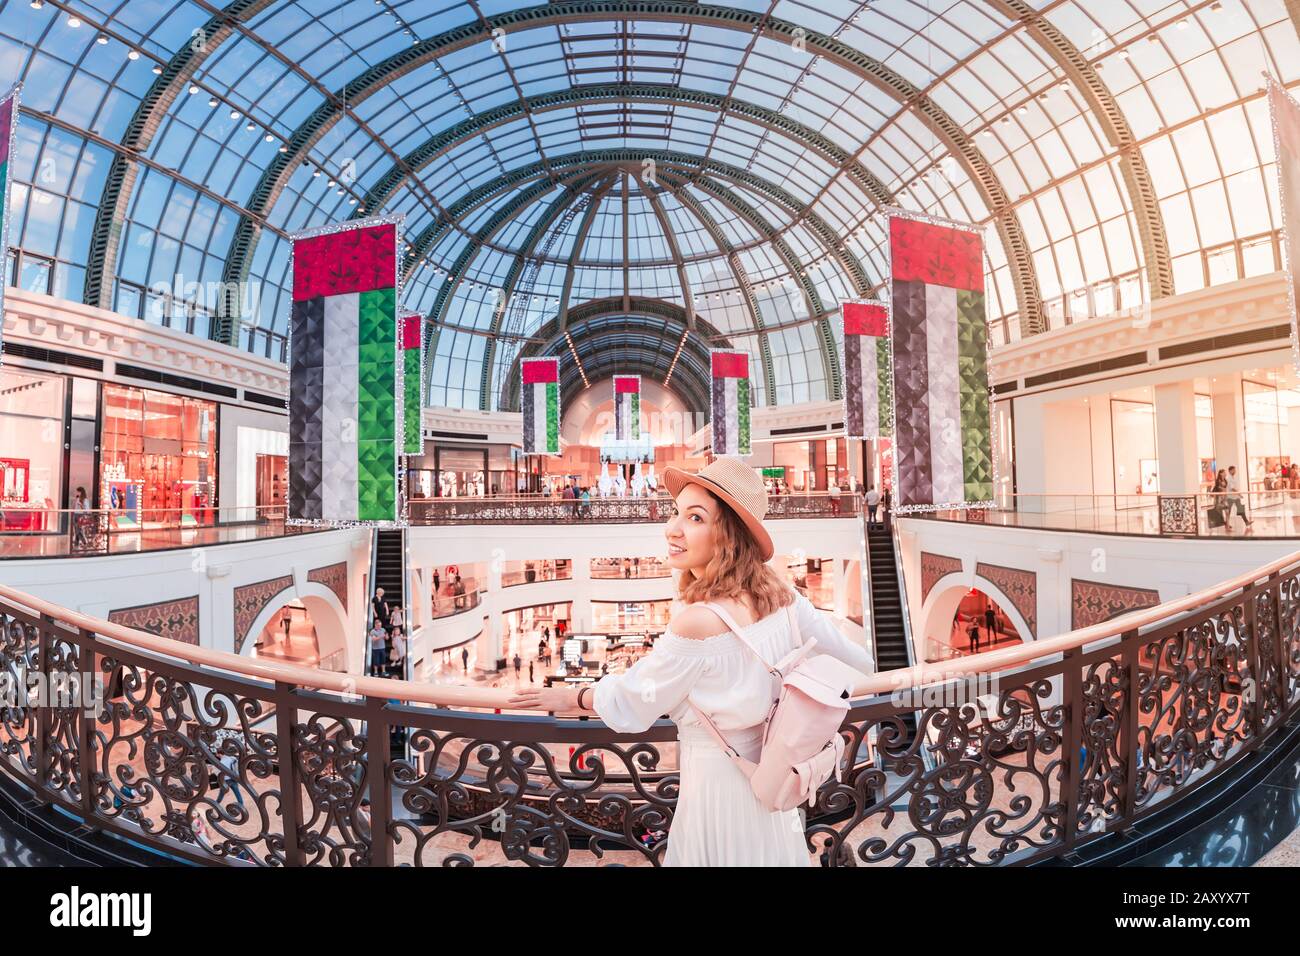 Un jeune touriste marche dans l'un des plus grands centres commerciaux de Dubaï - Emirates Mall. Voyage aux Émirats arabes Unis Banque D'Images